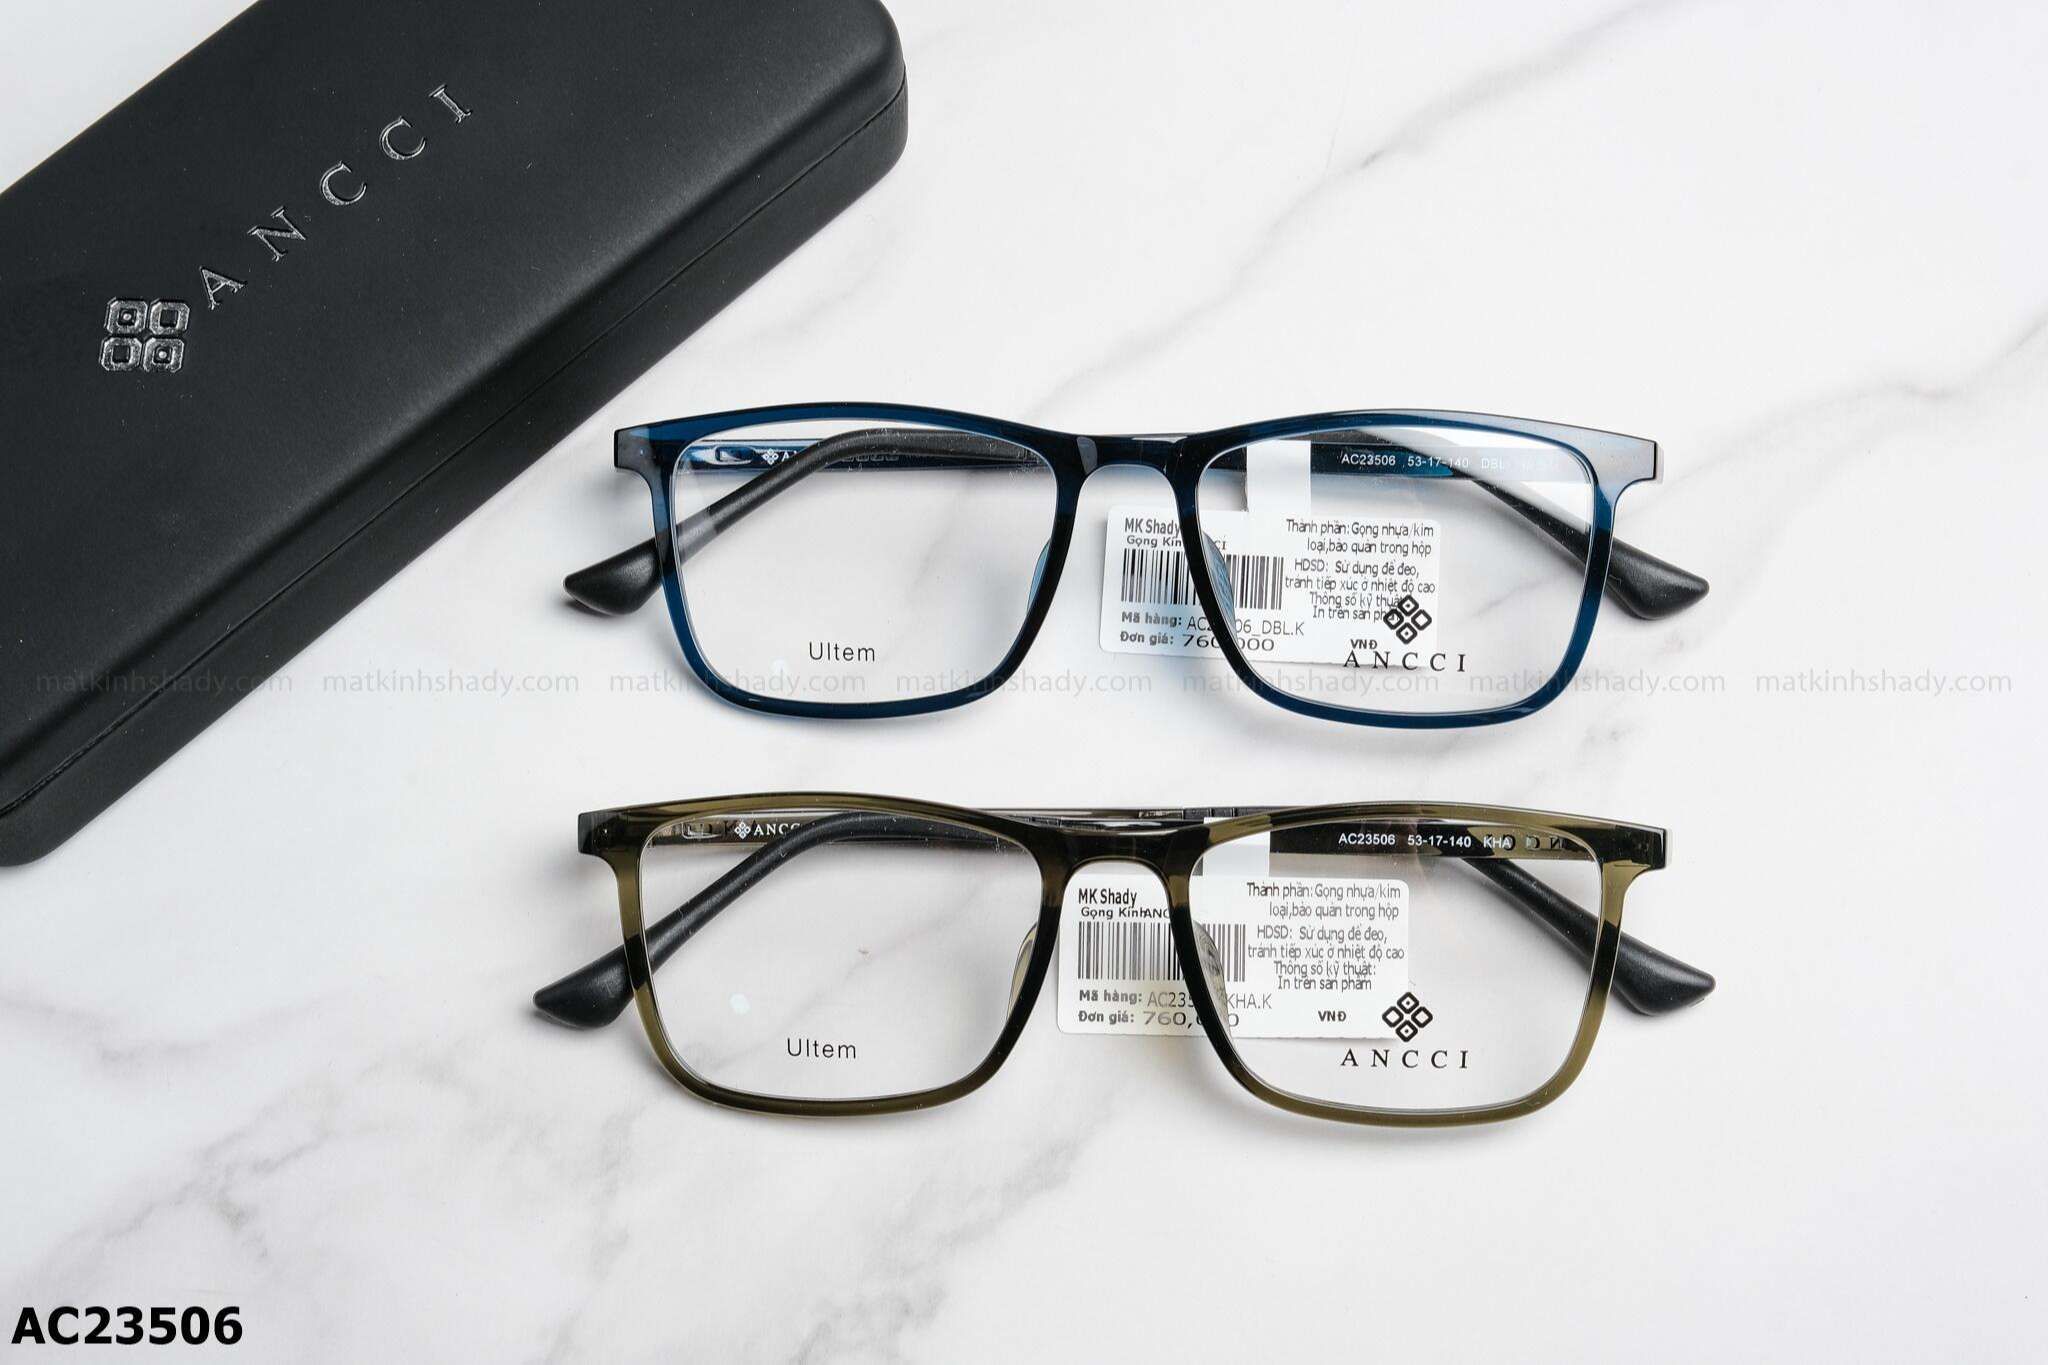  ANCCI Eyewear - Glasses - AC23506 